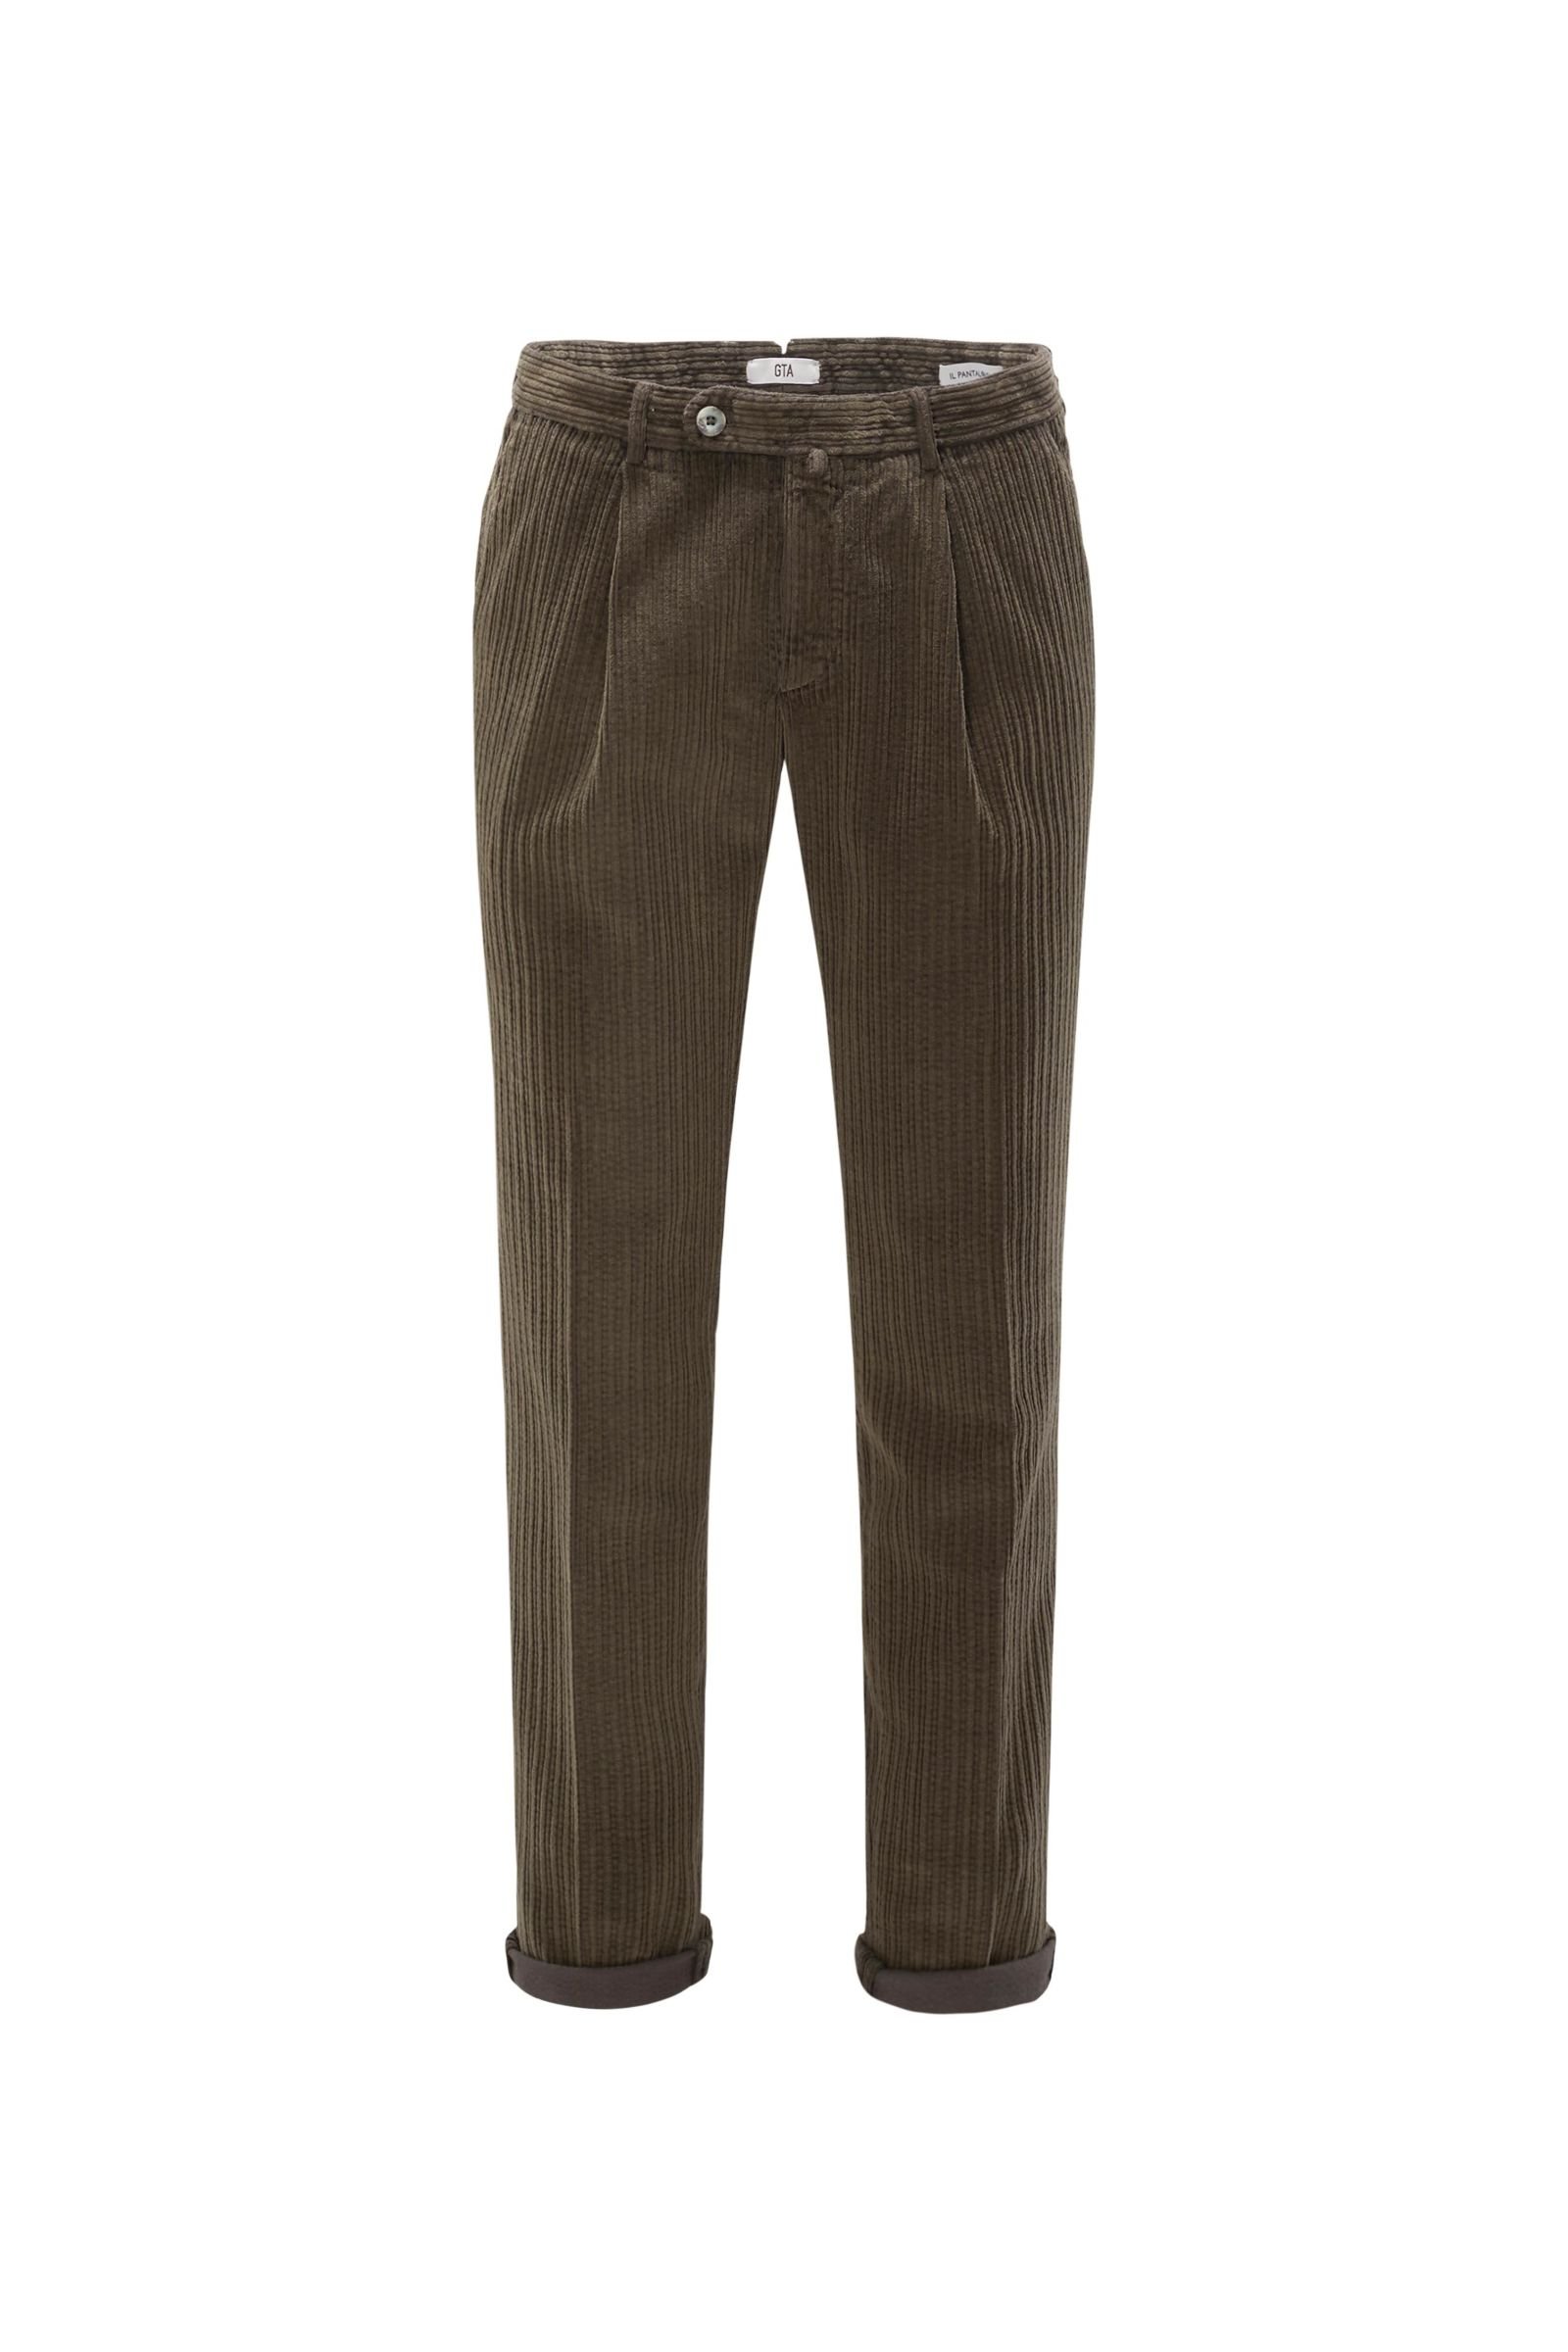 Corduroy trousers dark brown